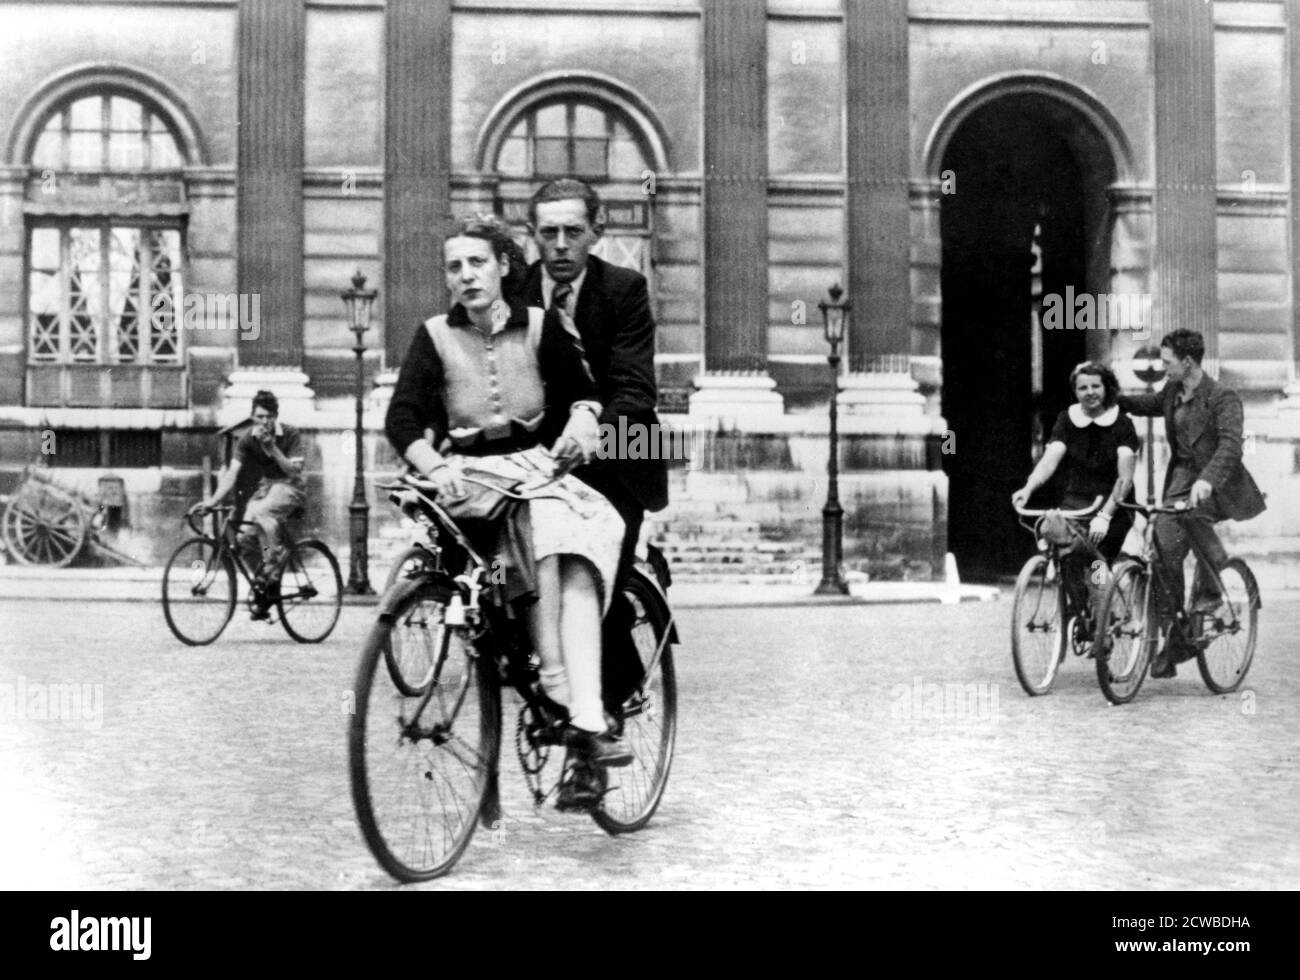 Parisiens voyageant à vélo, Paris occupé par l'Allemagne, juillet 1940. Sous l'occupation allemande, l'essence était impossible à obtenir. Seuls les véhicules de police et les véhicules transportant des denrées alimentaires ont été autorisés à voyager. La bicyclette est donc devenue le principal mode de transport pour les civils. Le photographe est inconnu. Banque D'Images